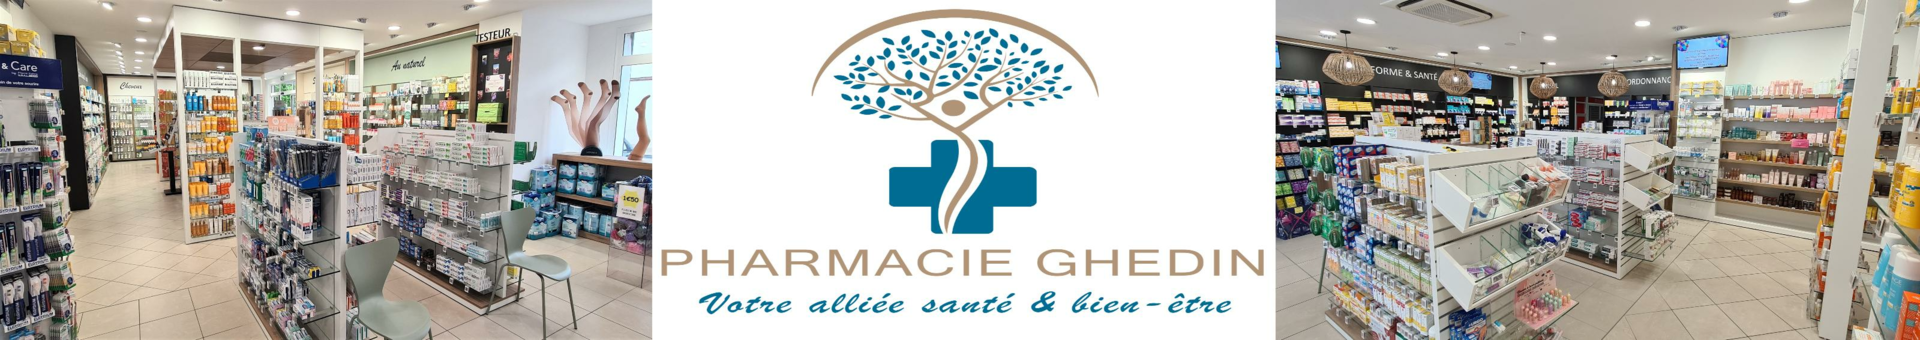 Pharmacie Ghedin,Labastide-Saint-Sernin